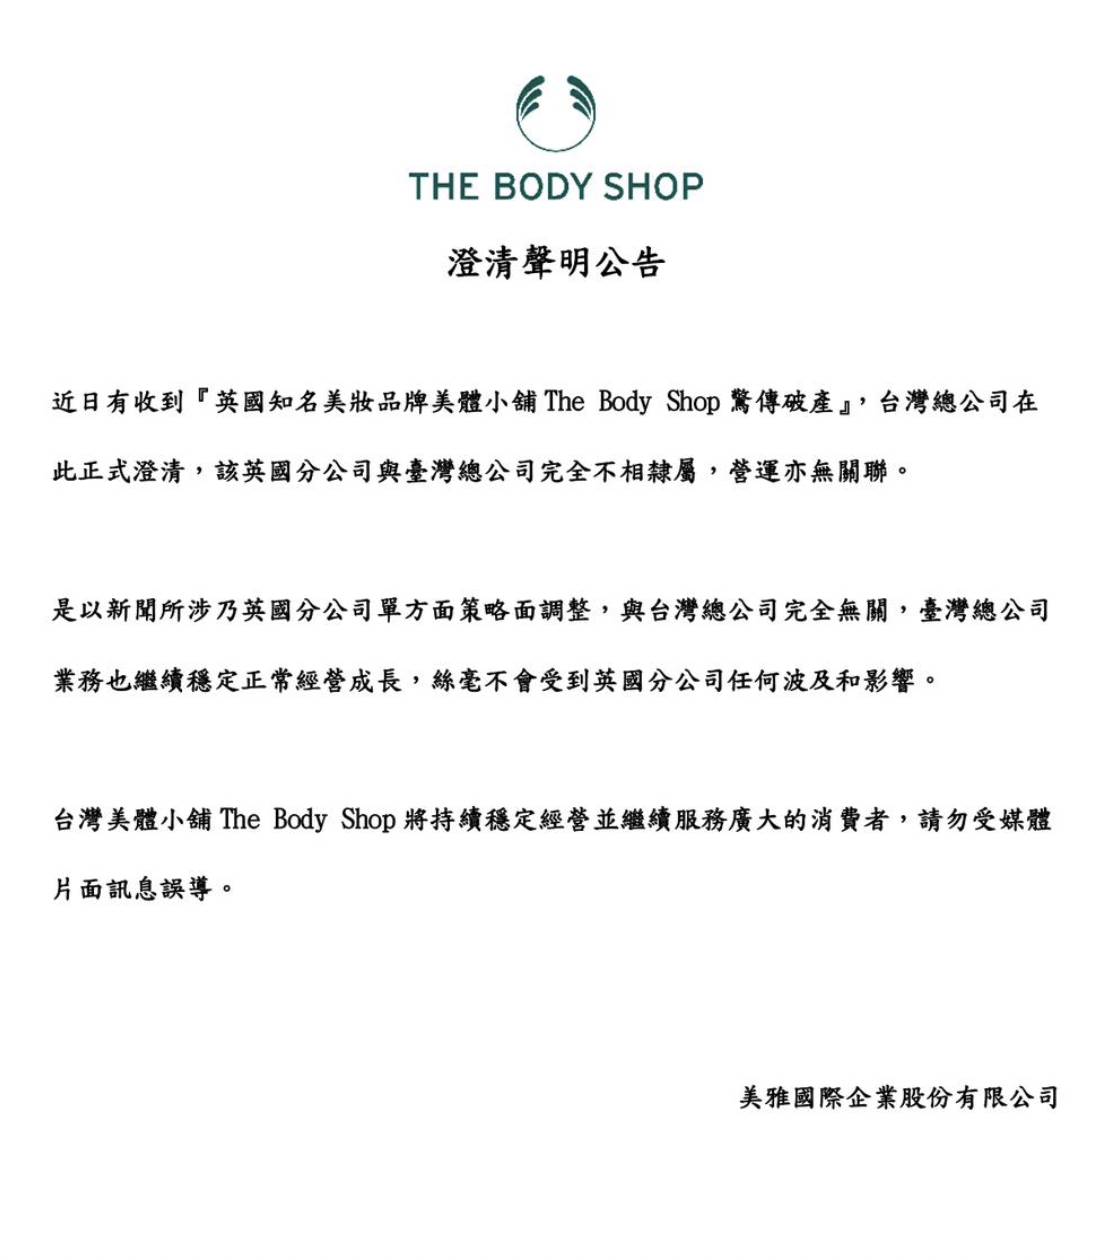 英國知名美妝連鎖店The Body Shop（美體小舖）日前宣布近日破產程序，全球有超過100間門市恐怕面臨歇業。對此，台灣總代理也緊急在臉書上發表聲明，強調英國分公司與台灣分公司並不相隸屬，台灣分公司將會持續經營，不受到英國分公司影響。